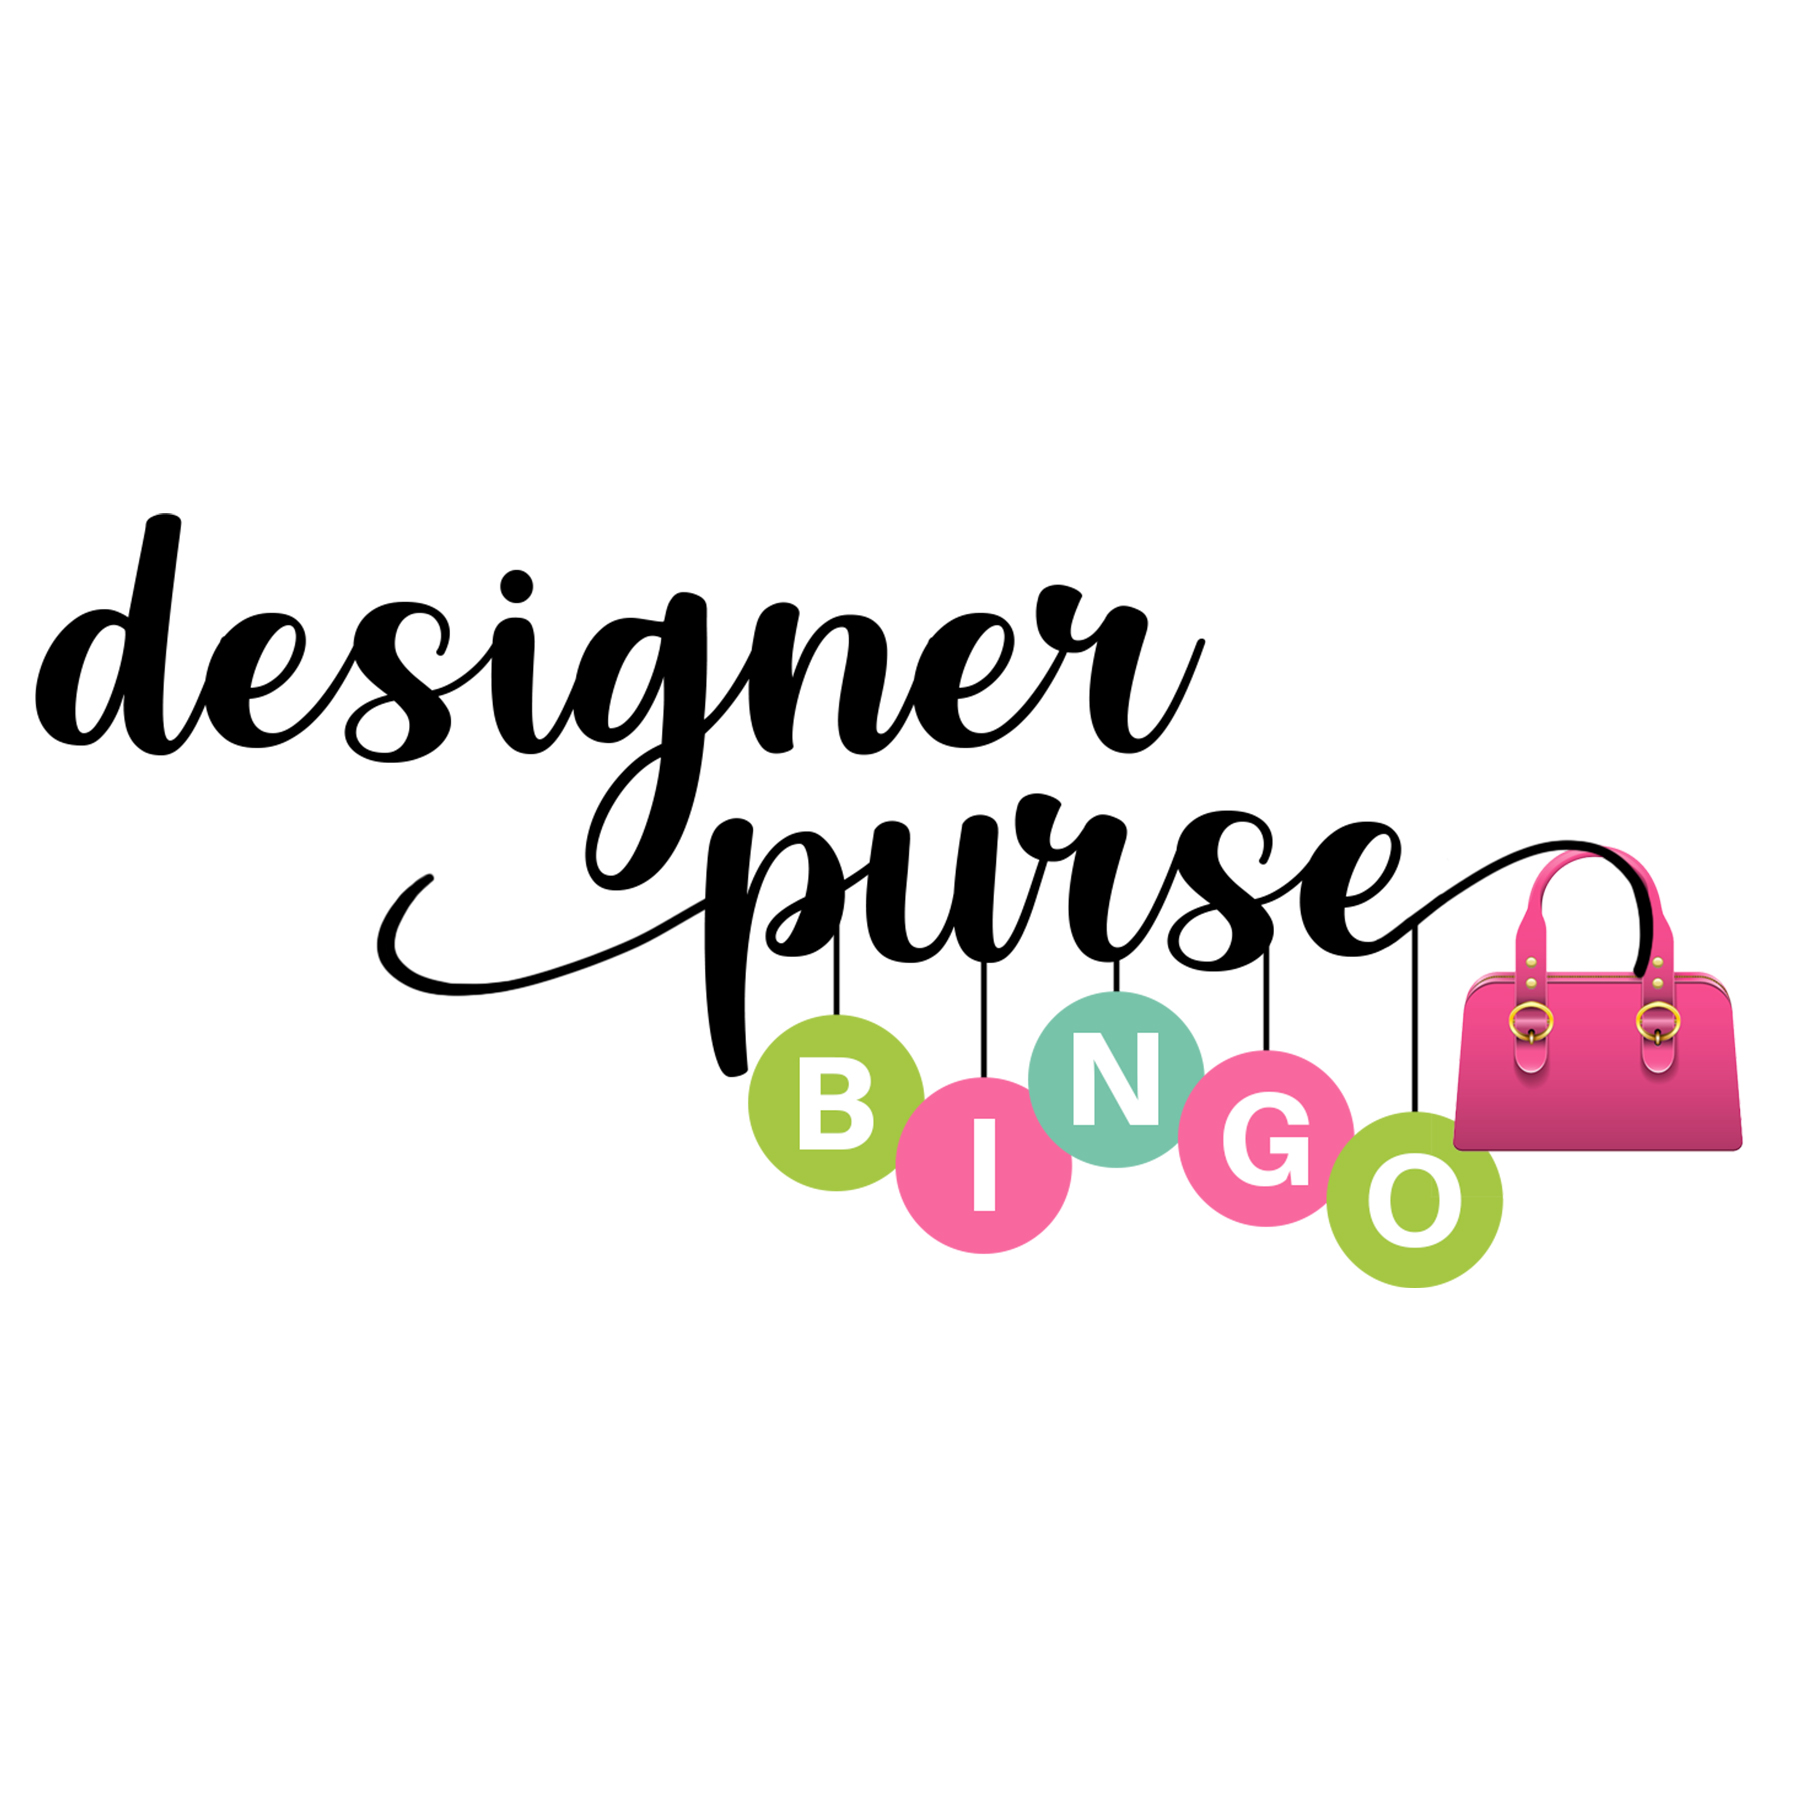 Designer purse bingo